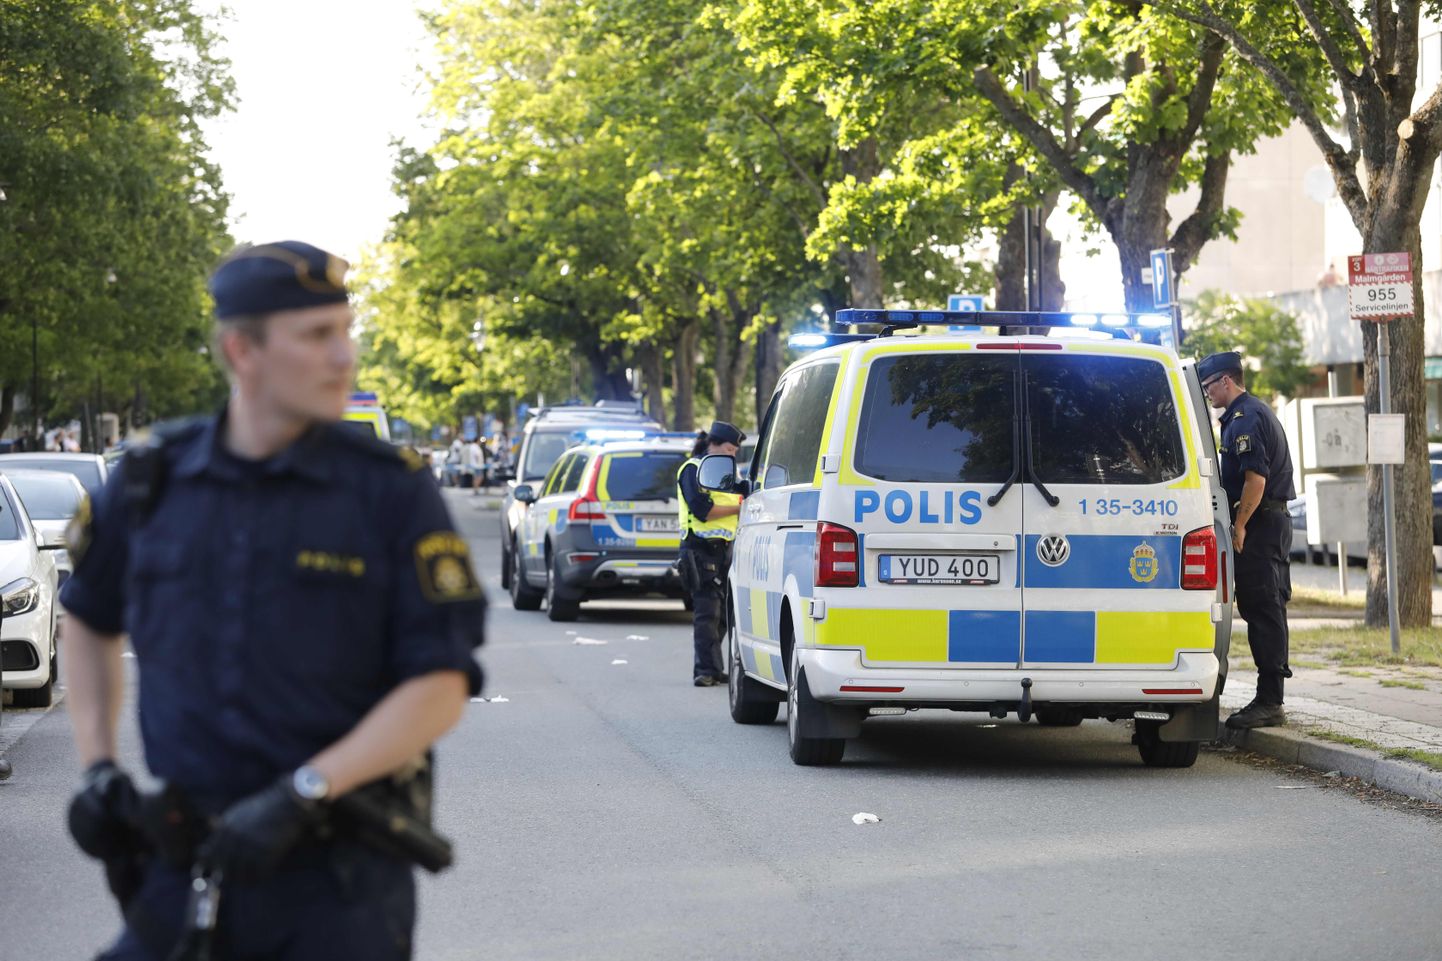 Rootsi politseinukud eelmisel suvel kuriteopaigal Stockholmi lähistel Sollentunas, kus jõukude arvete klaarimises sai surma üks alaealine noormees.